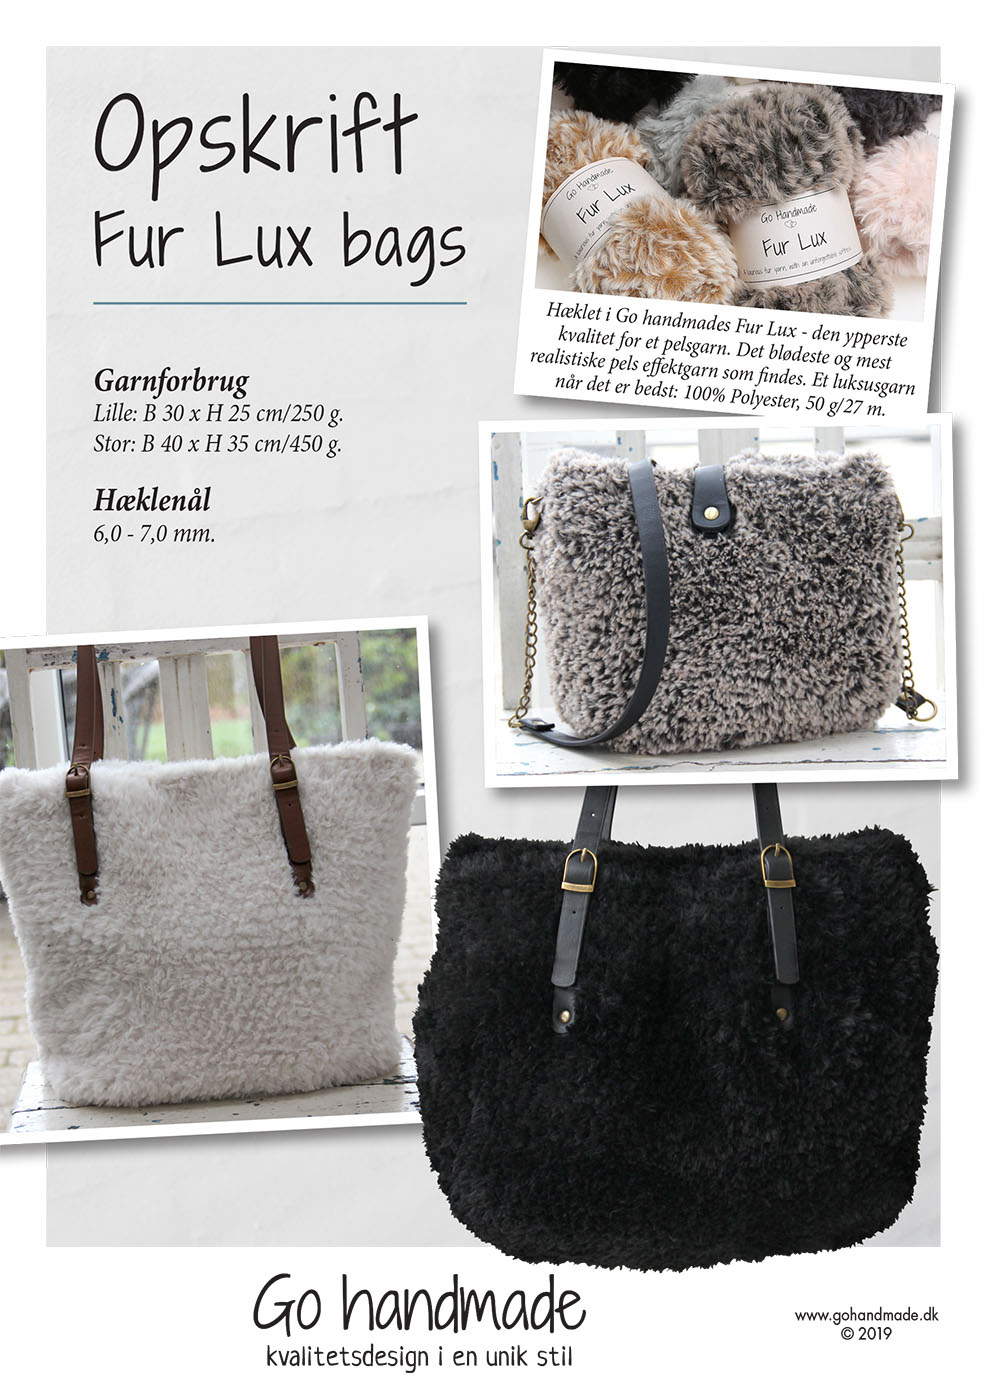 fe der ovre Generel Fur Lux Bags - DK - Tasker - Go handmade